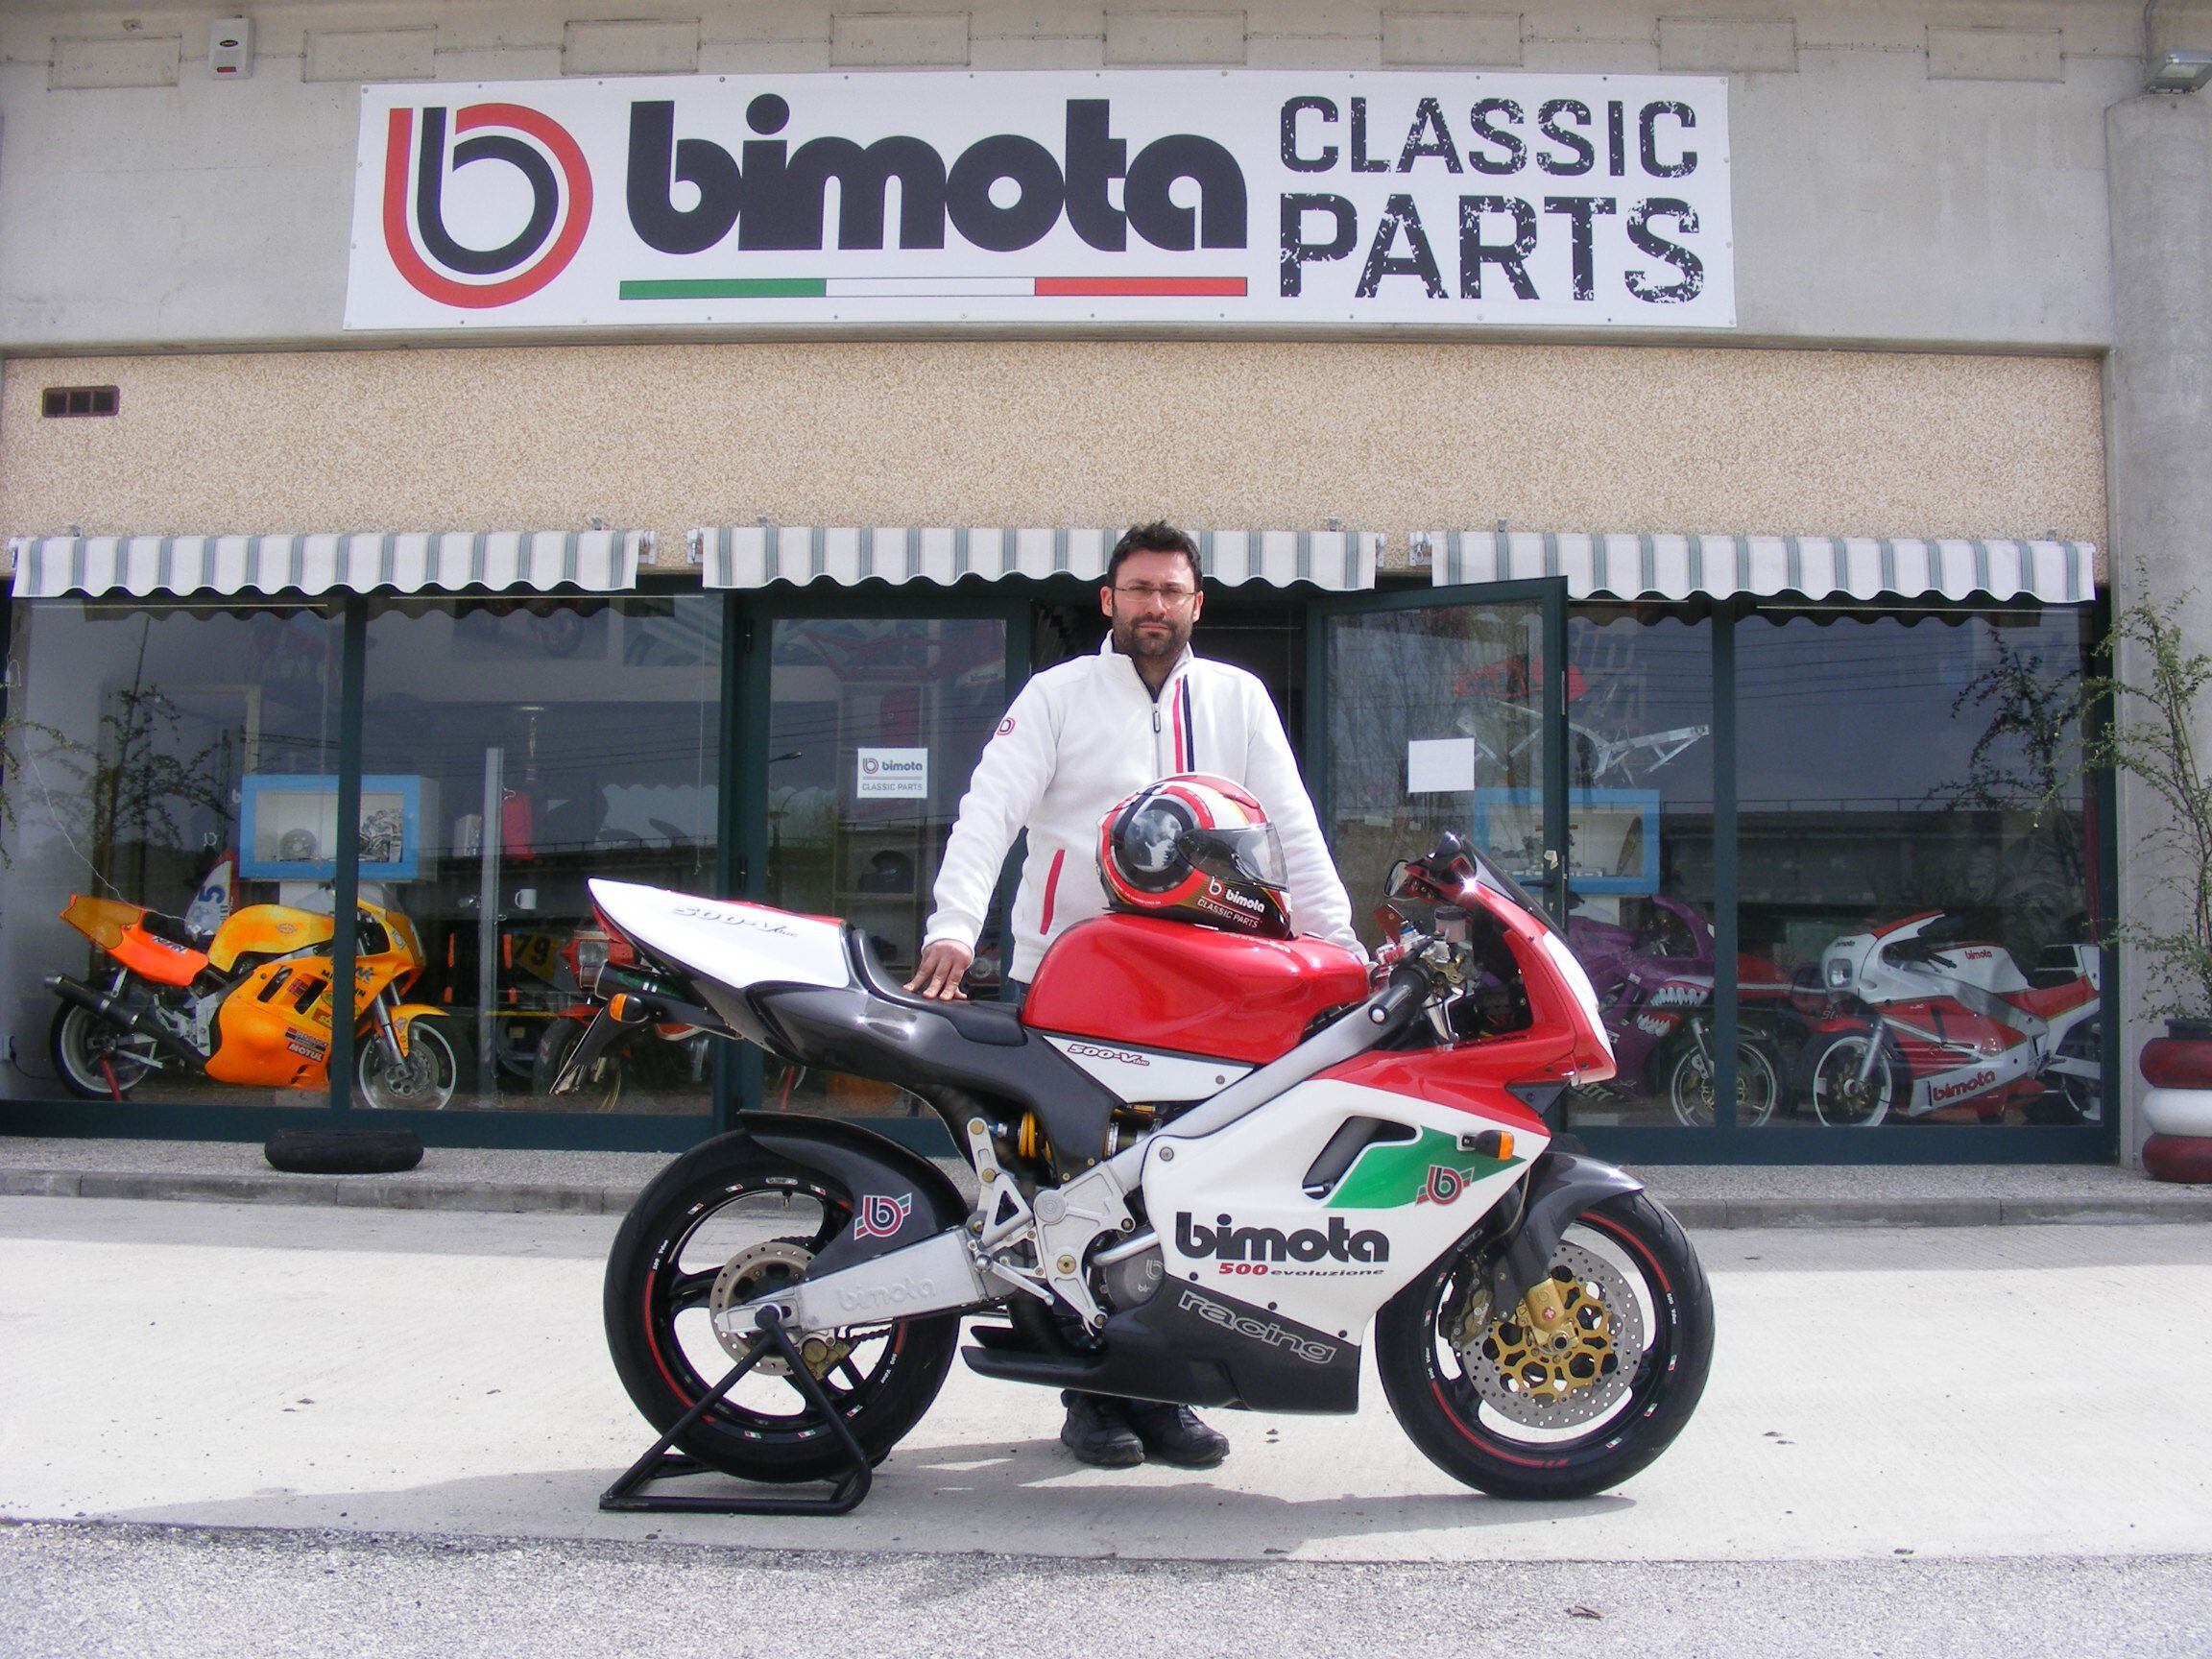 Former Bimota R&D man Paolo Girotti outside his Bimota Classic Parts headquarters in Città della Pieve, central Italy.